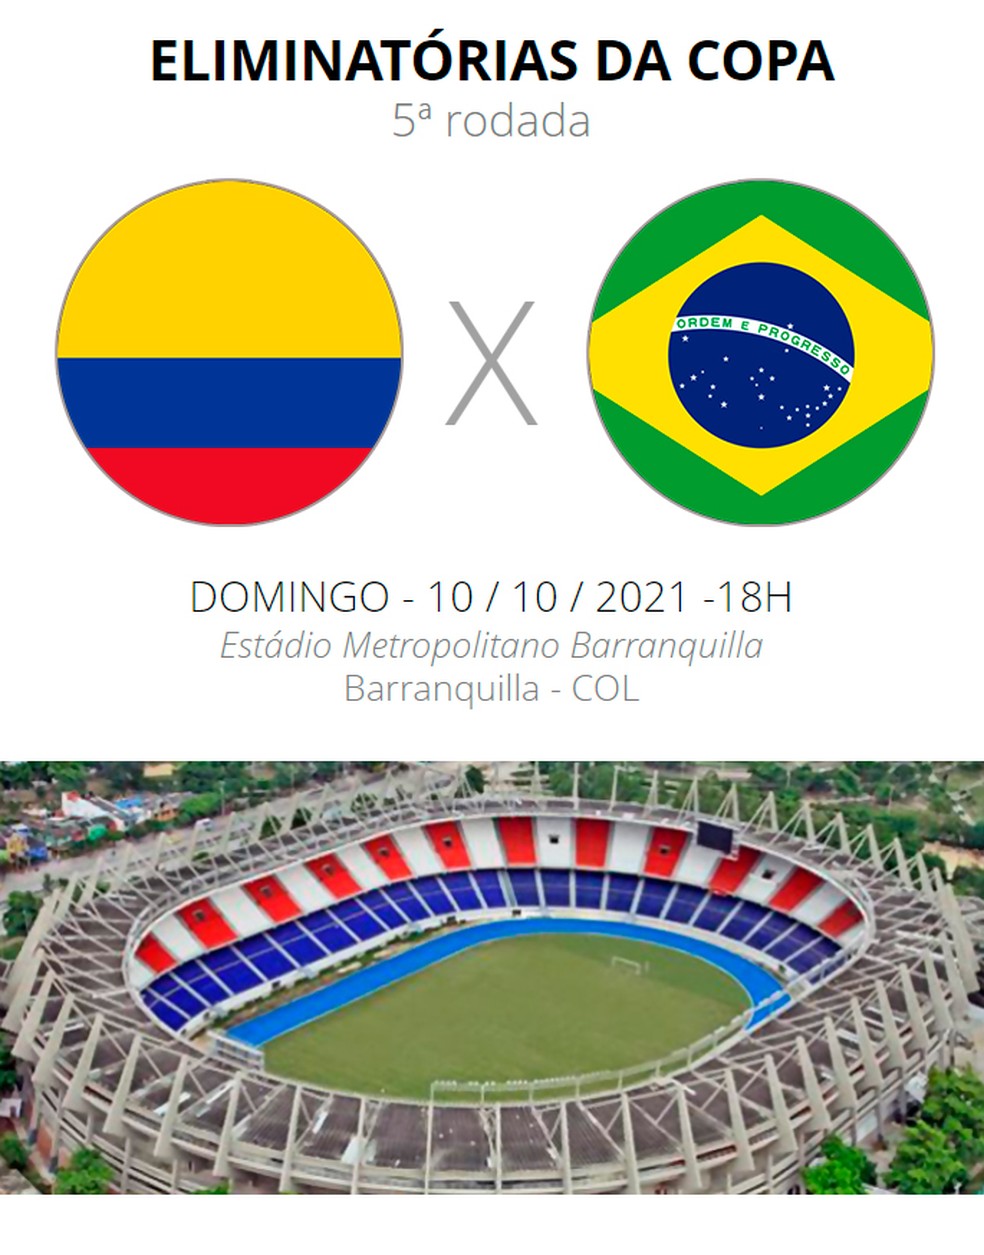 Colômbia x Brasil: onde assistir ao jogo das Eliminatórias da Copa do Mundo